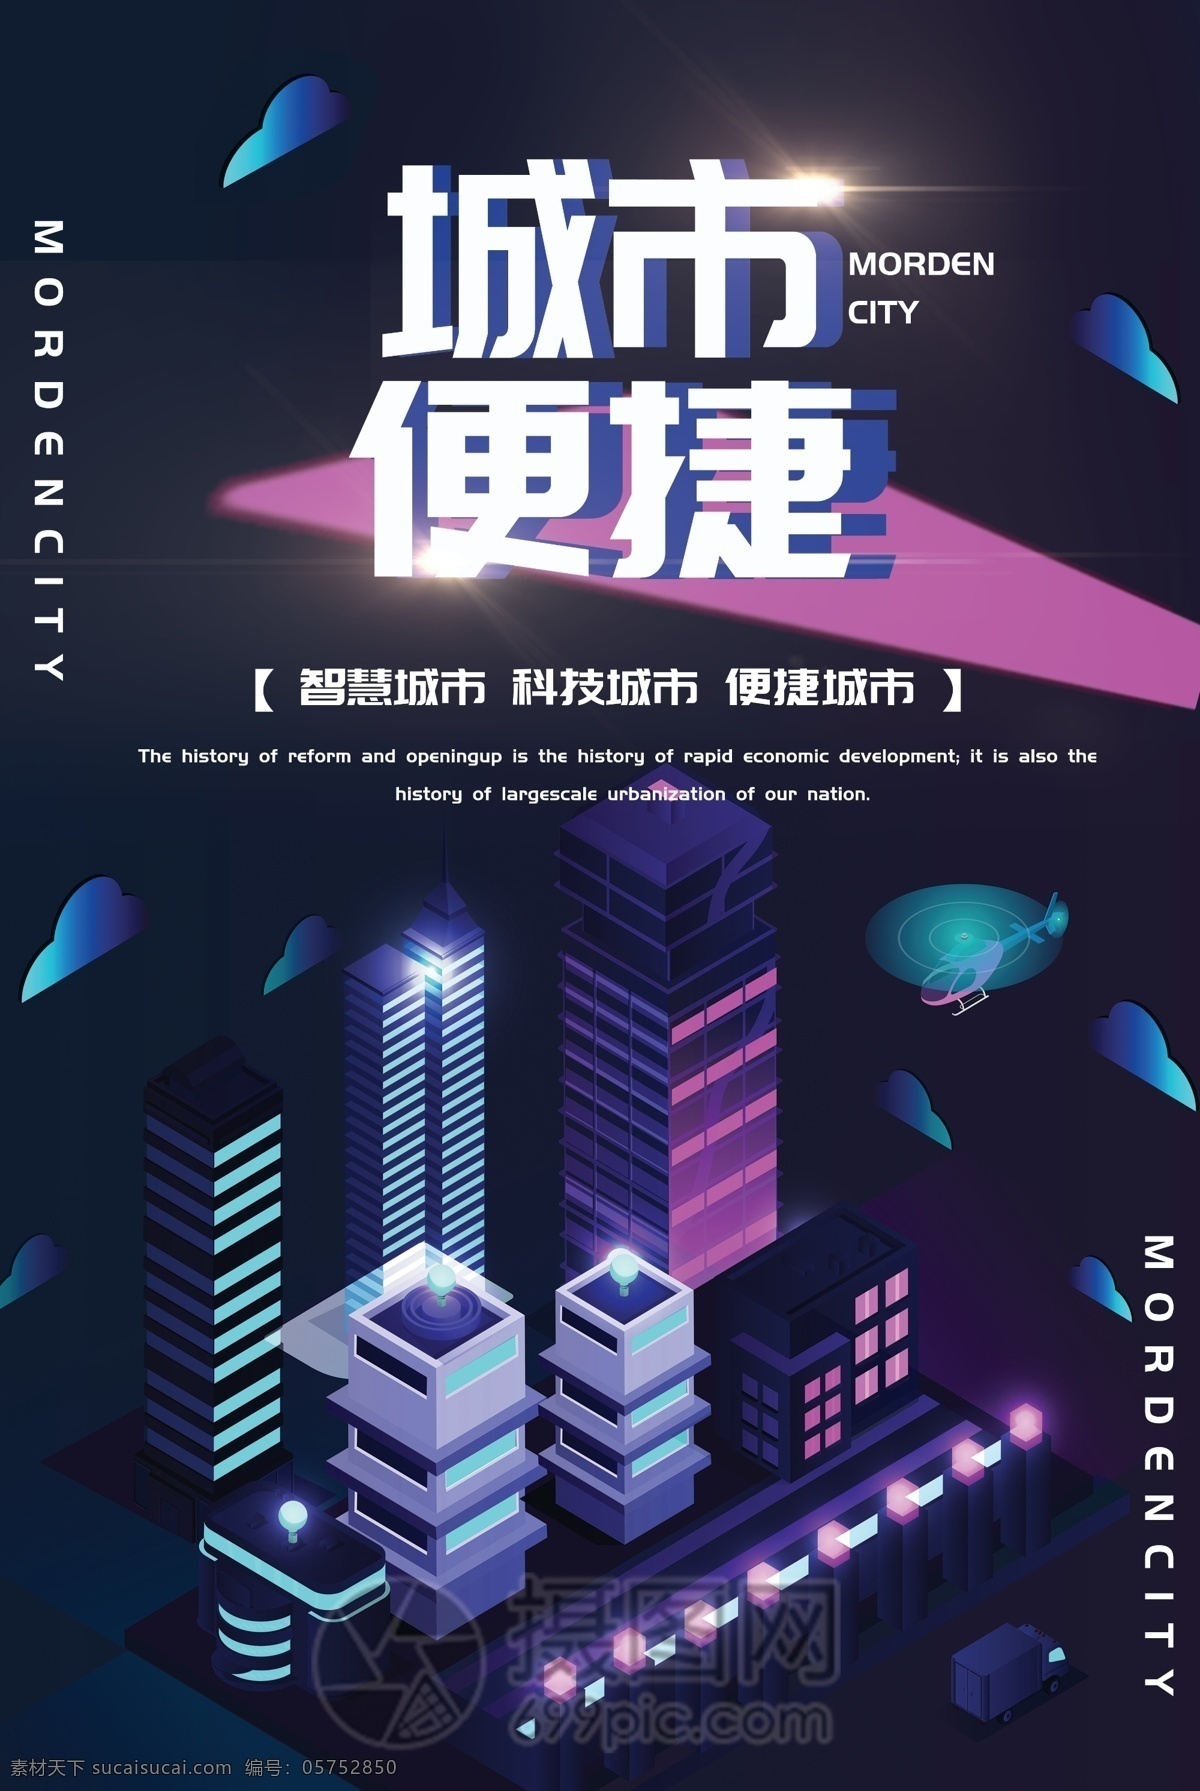 紫色 流体 渐变 便捷 城市 宣传海报 城市便捷 流体渐变 科技 科技感 方便 快捷支付 生活 进步 未来 发展 立体 海报